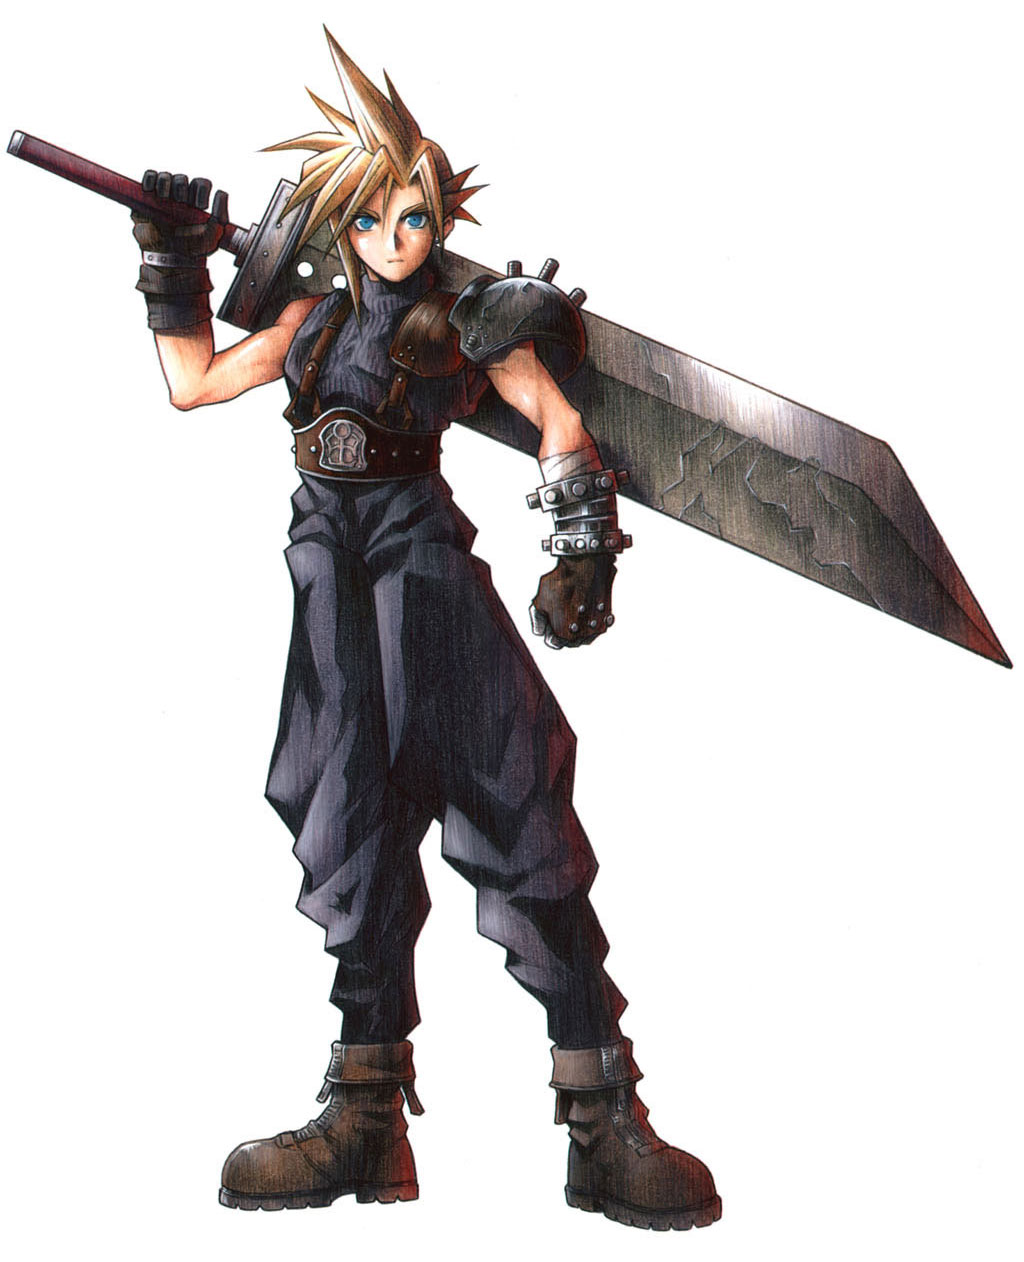 Cloud Strife, nhân vật chính trong trò chơi Final Fantasy, là một trong những nhân vật huyền thoại được yêu thích nhất. Hãy tham gia ngay và khám phá những bức ảnh đẹp về Cloud Strife!